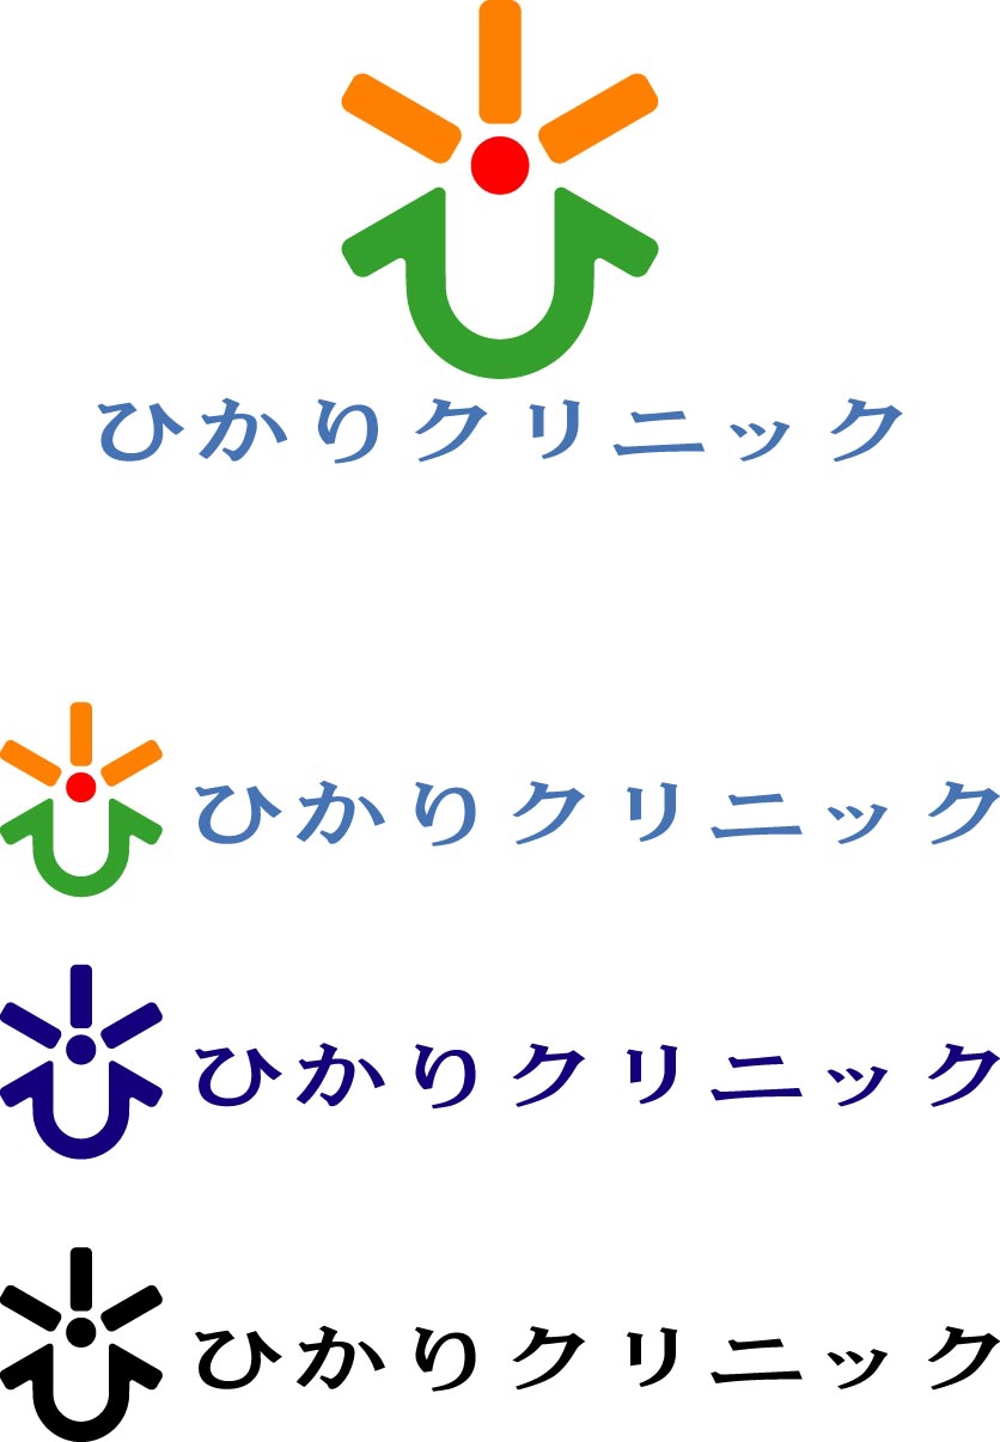 新規開設予定のクリニック【ひかりクリニック】のロゴ作成